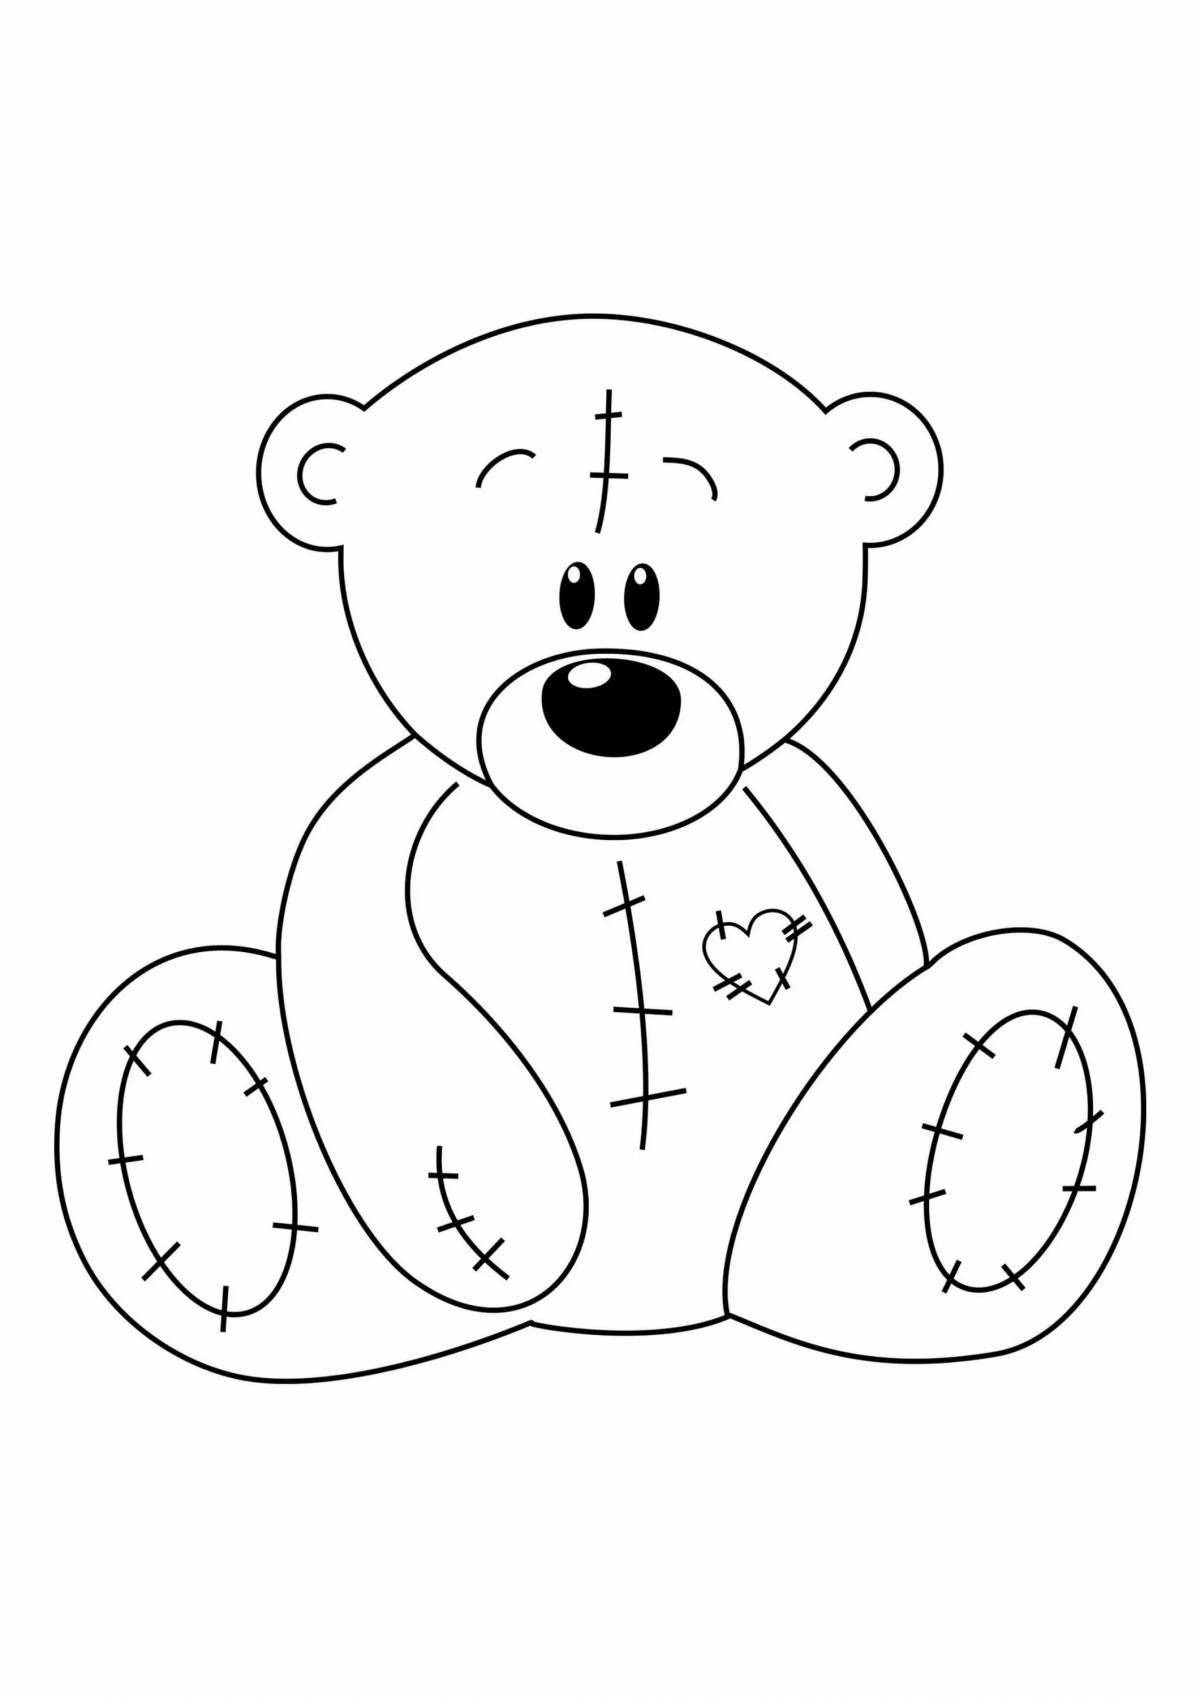 Funny teddy bear drawing